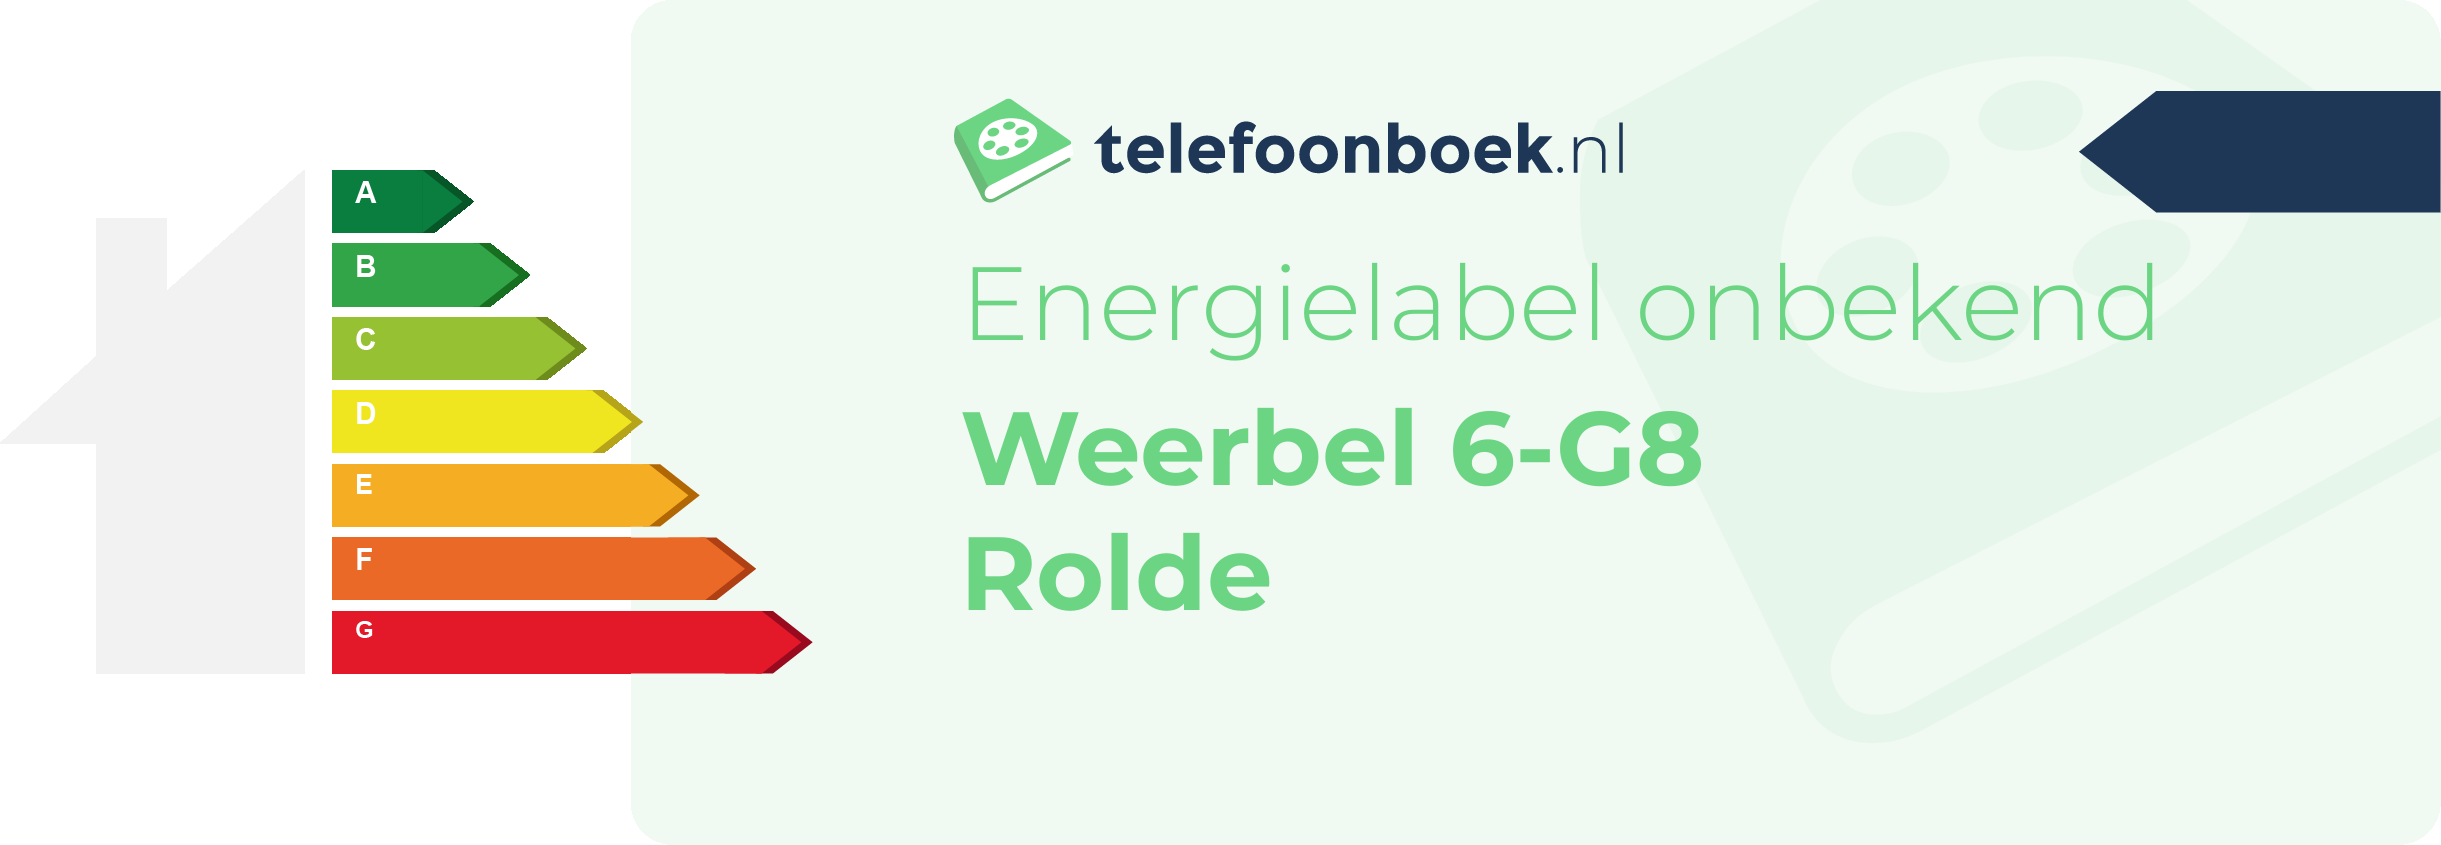 Energielabel Weerbel 6-G8 Rolde